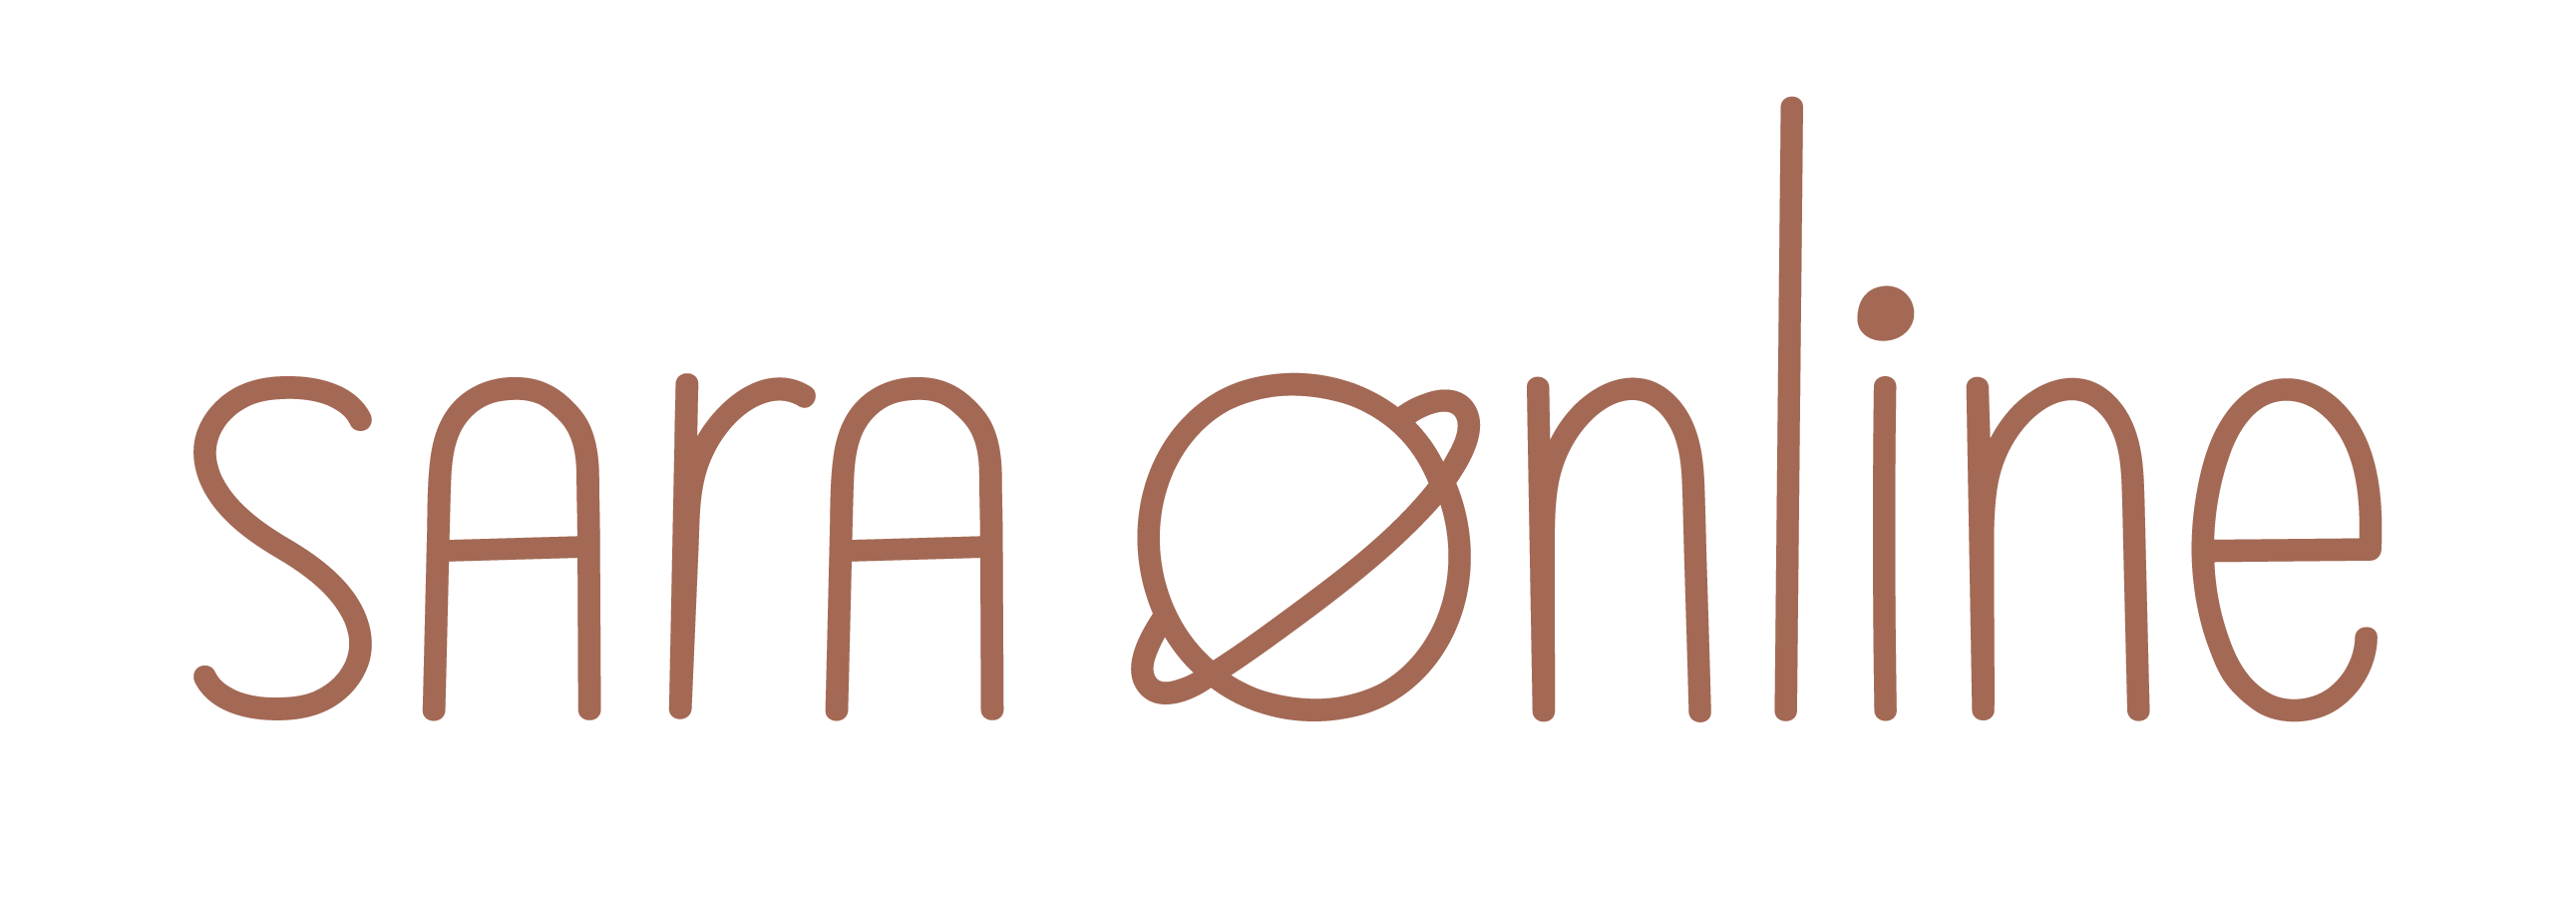 logotipo horizontal marron